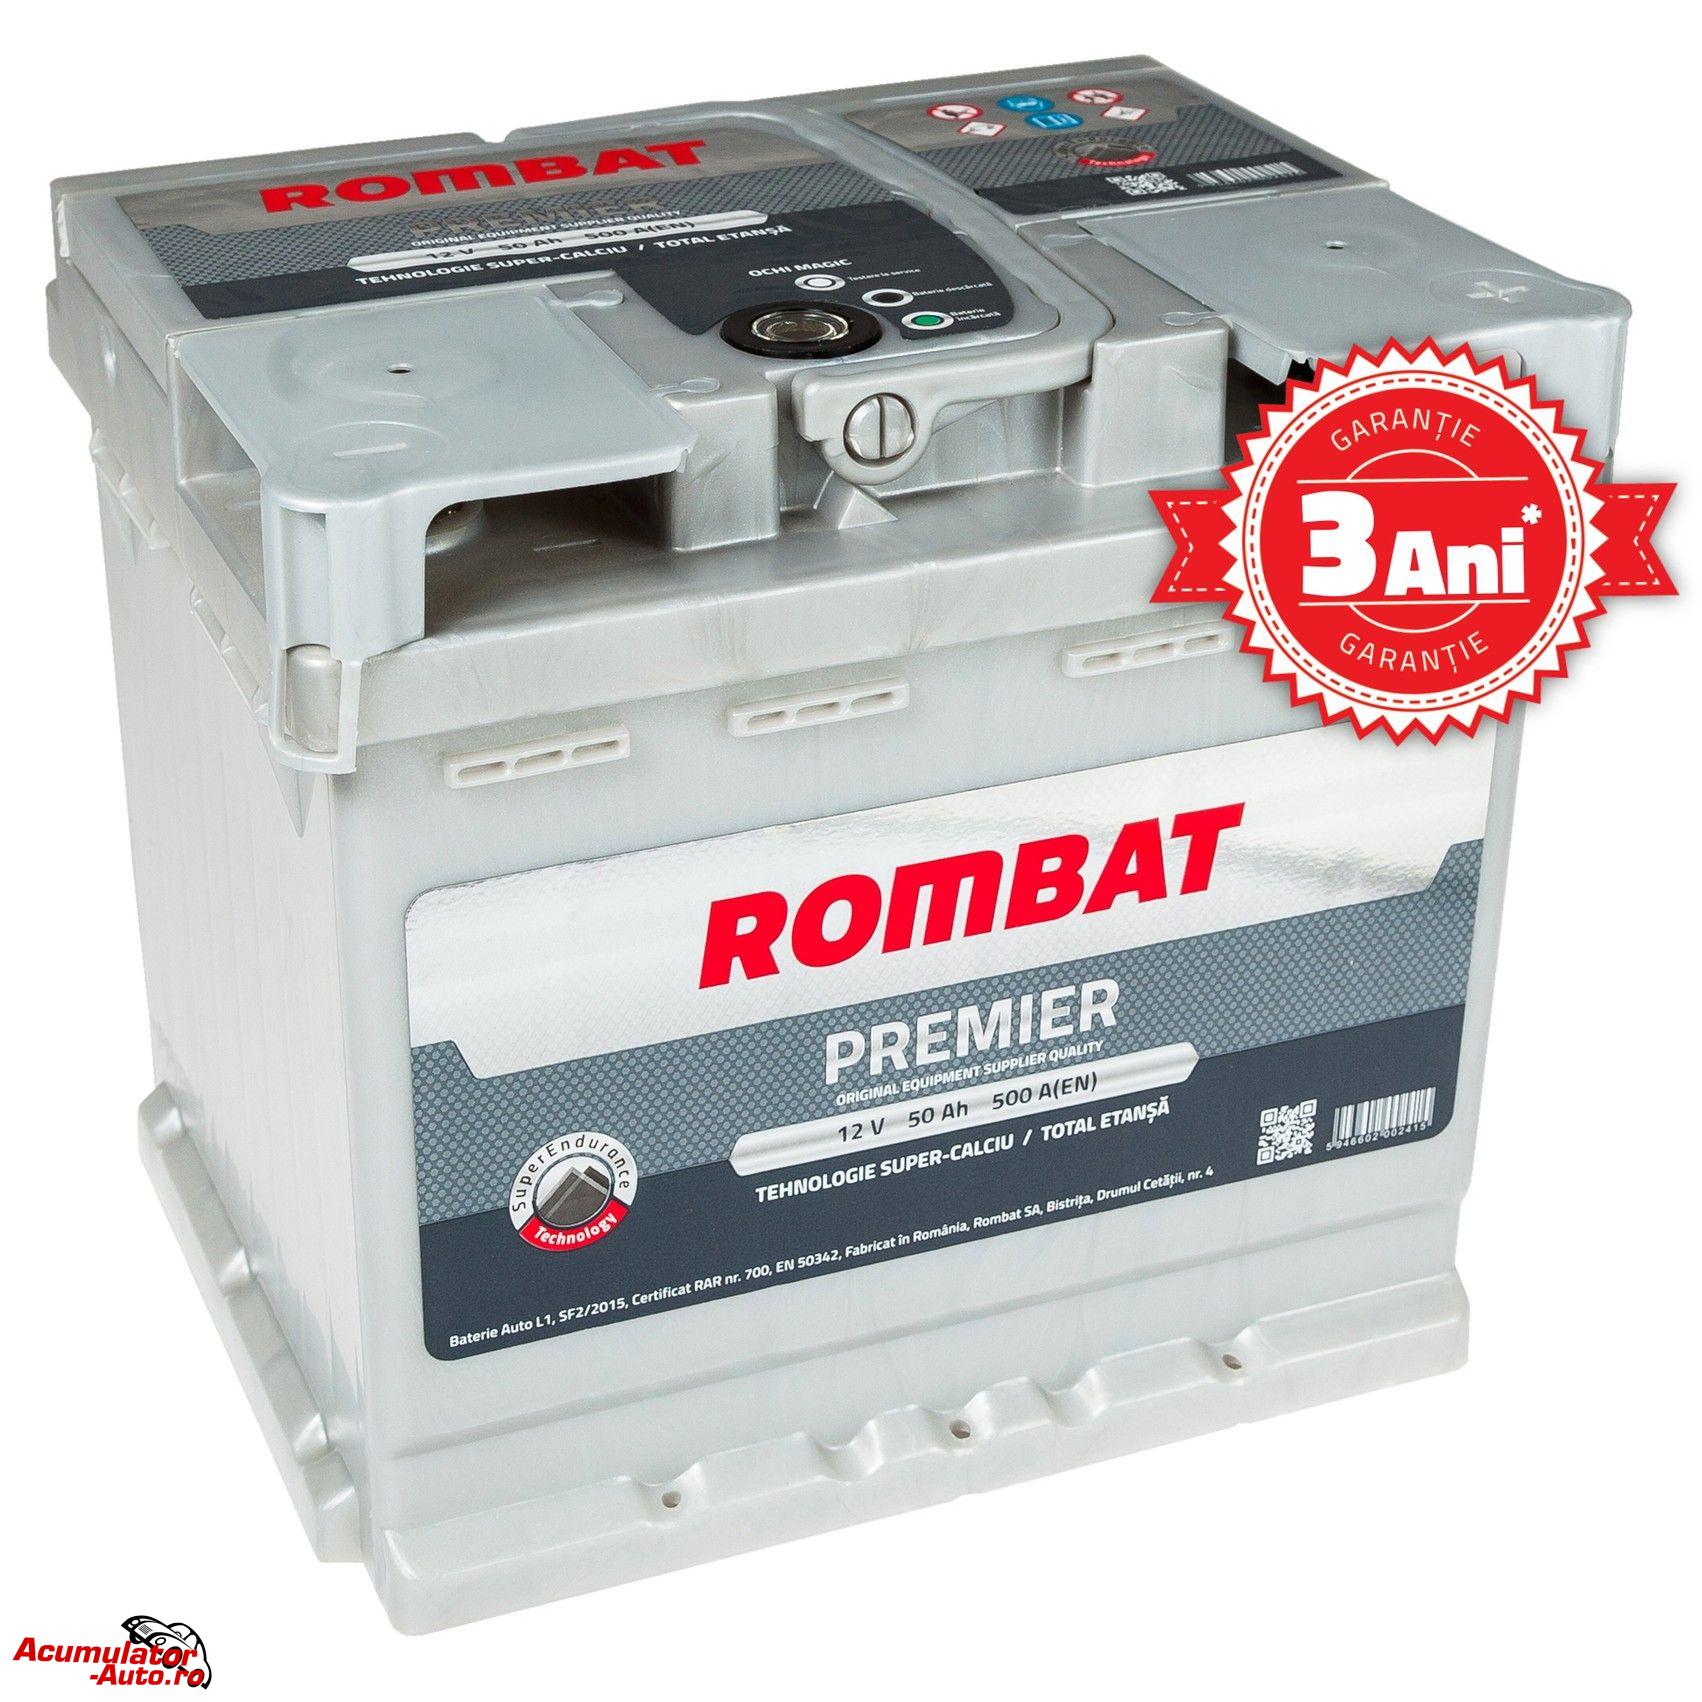 Acumulator auto ROMBAT Premier 50AH